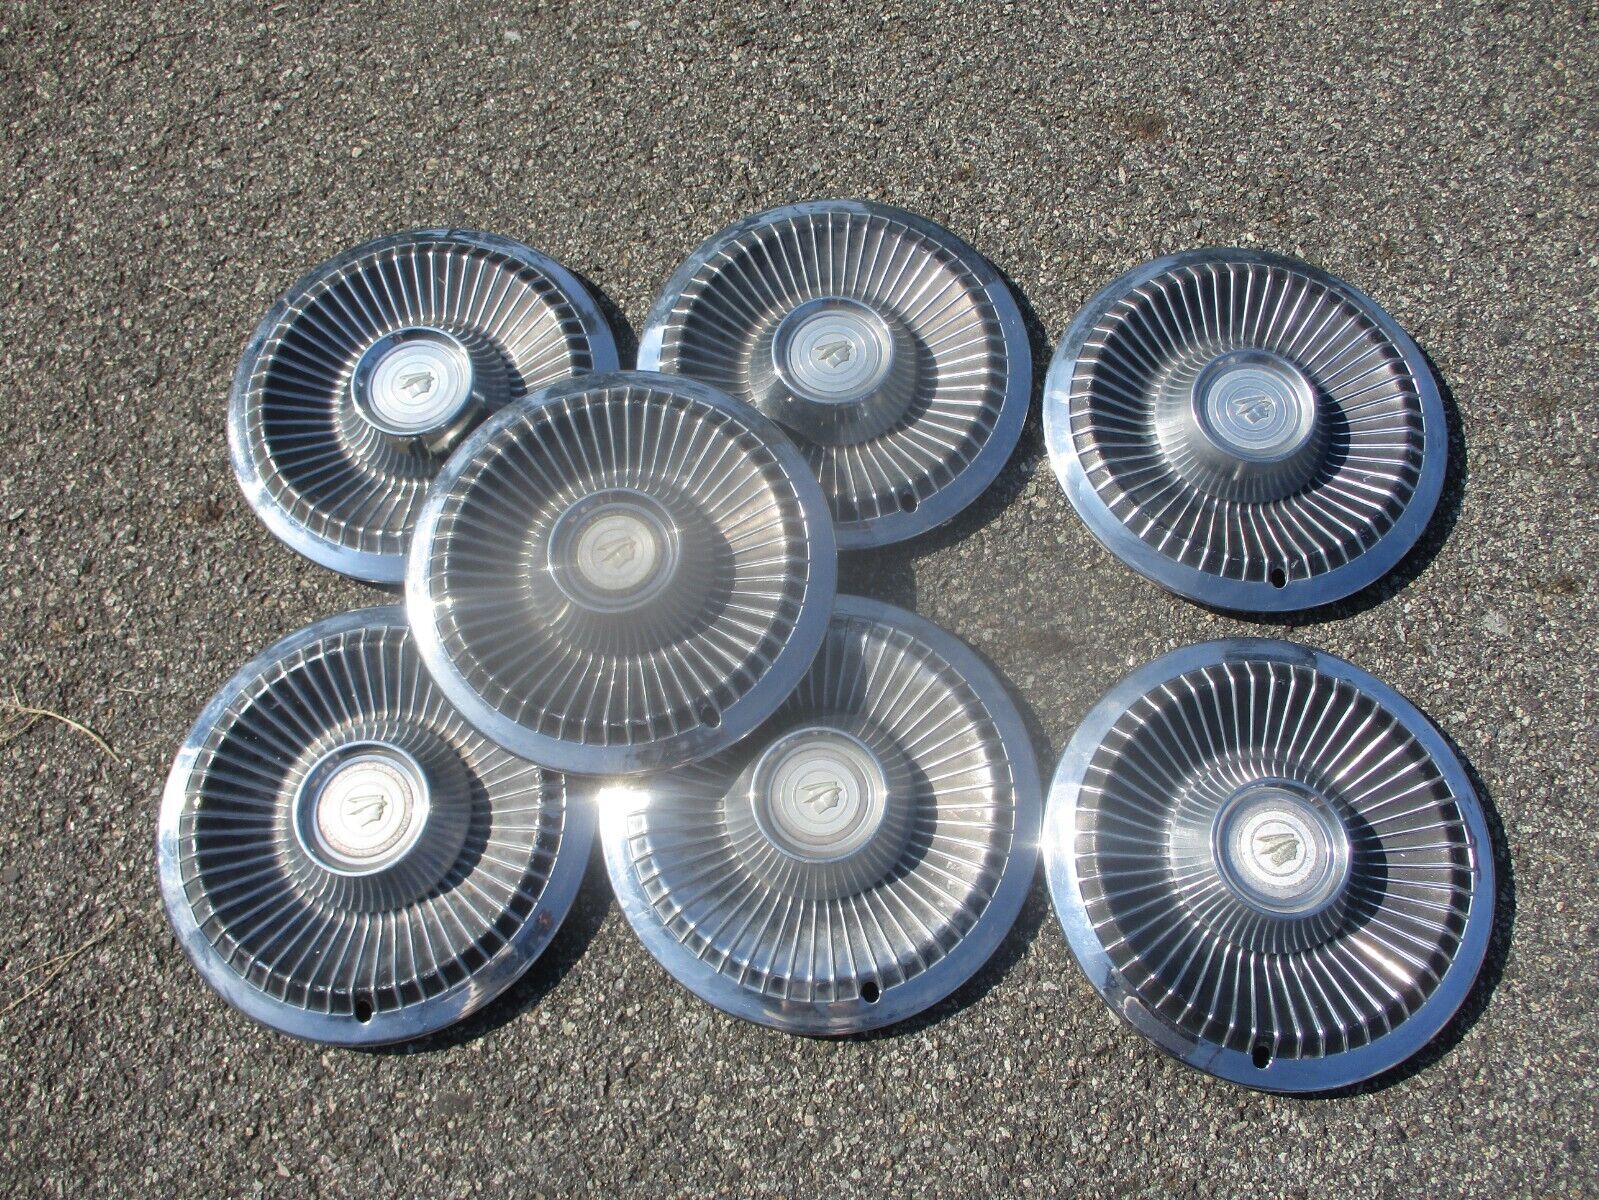 Huge lot of 7 factory 1968 Mercury Comet 14 inch hubcaps wheel covers